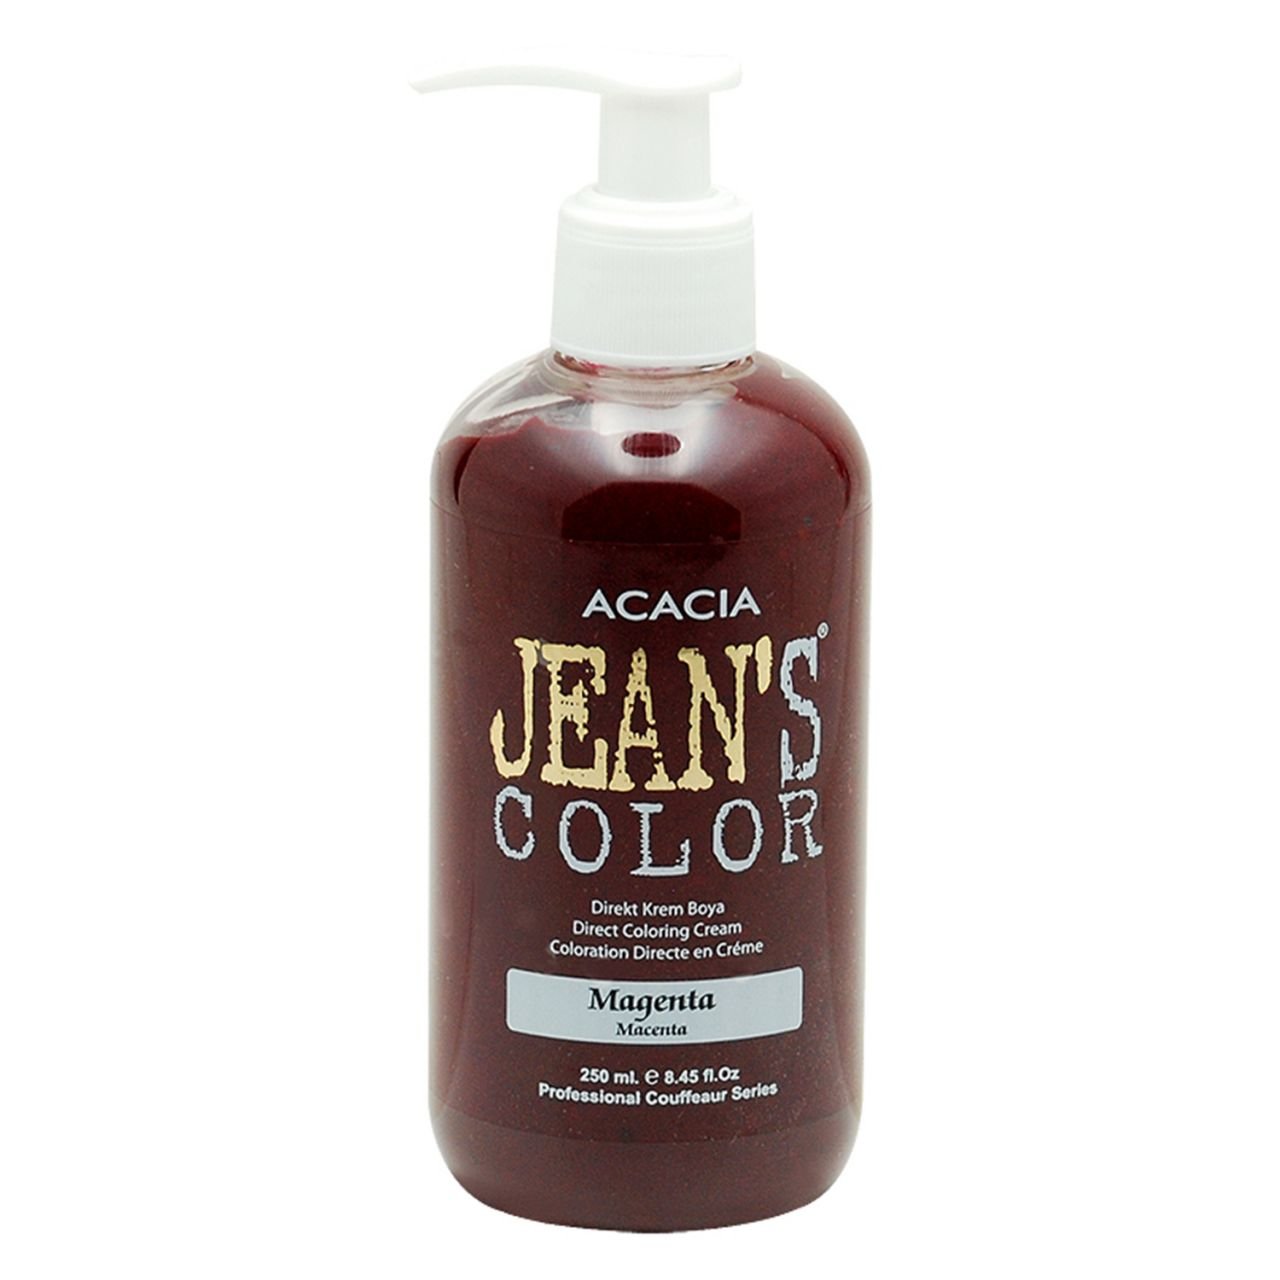 Jean's Color Su Bazlı Amonyaksız Saç Boyası (Magenta) 250 ml.